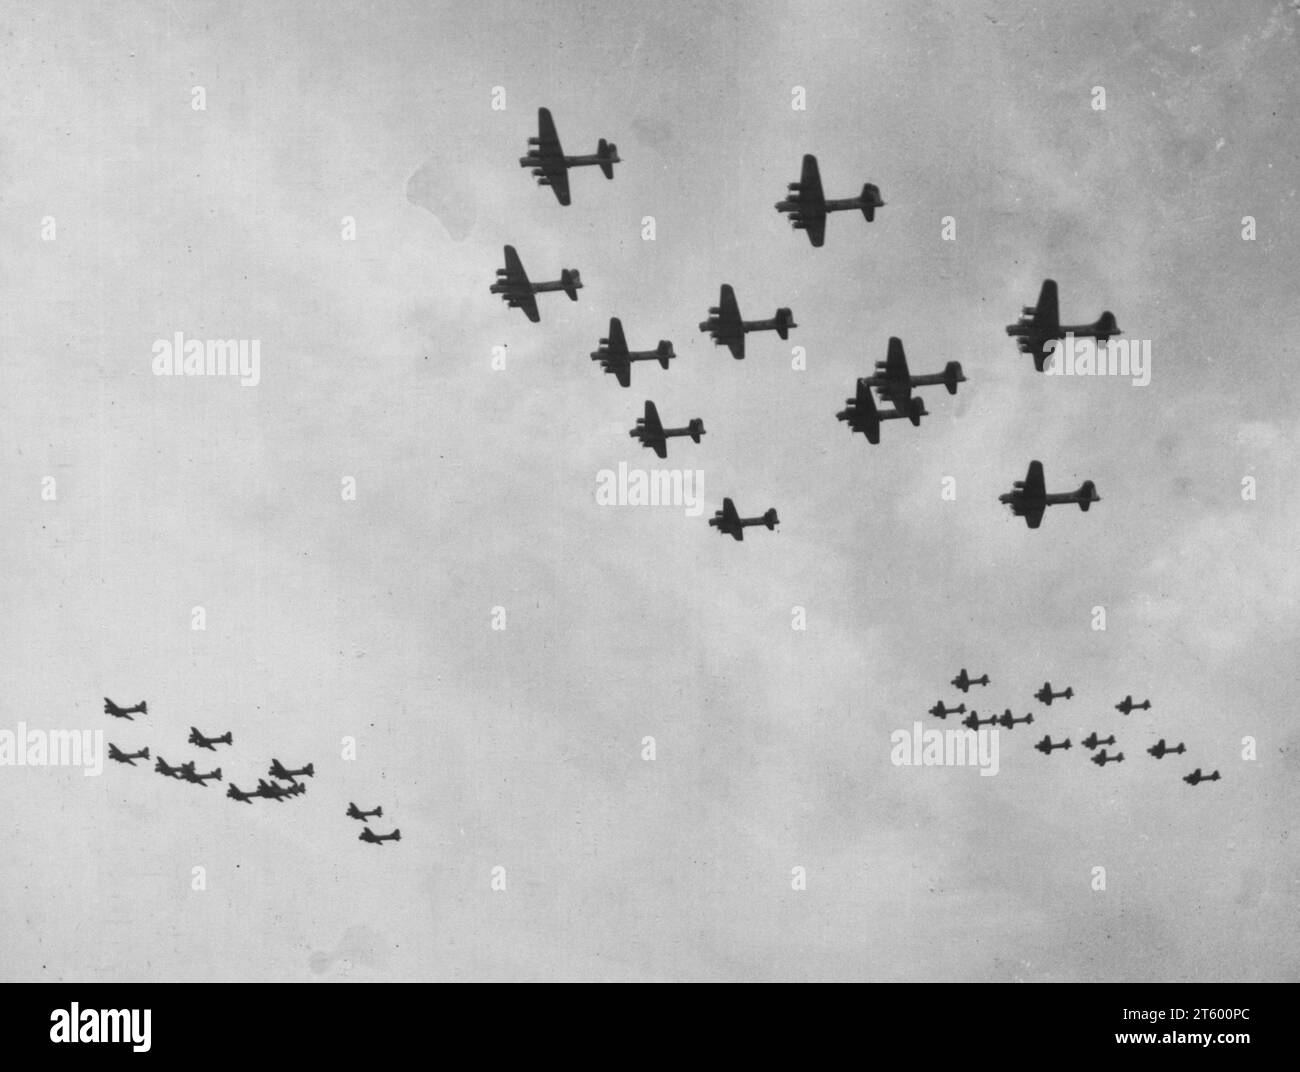 Une grande formation de Boeing B-17 'Flying Fortresss' Heads du 401St Bomb Group pour Home base en Angleterre après avoir bombardé des installations ennemies à Dresde, en Allemagne, le 23 avril 1945 Banque D'Images